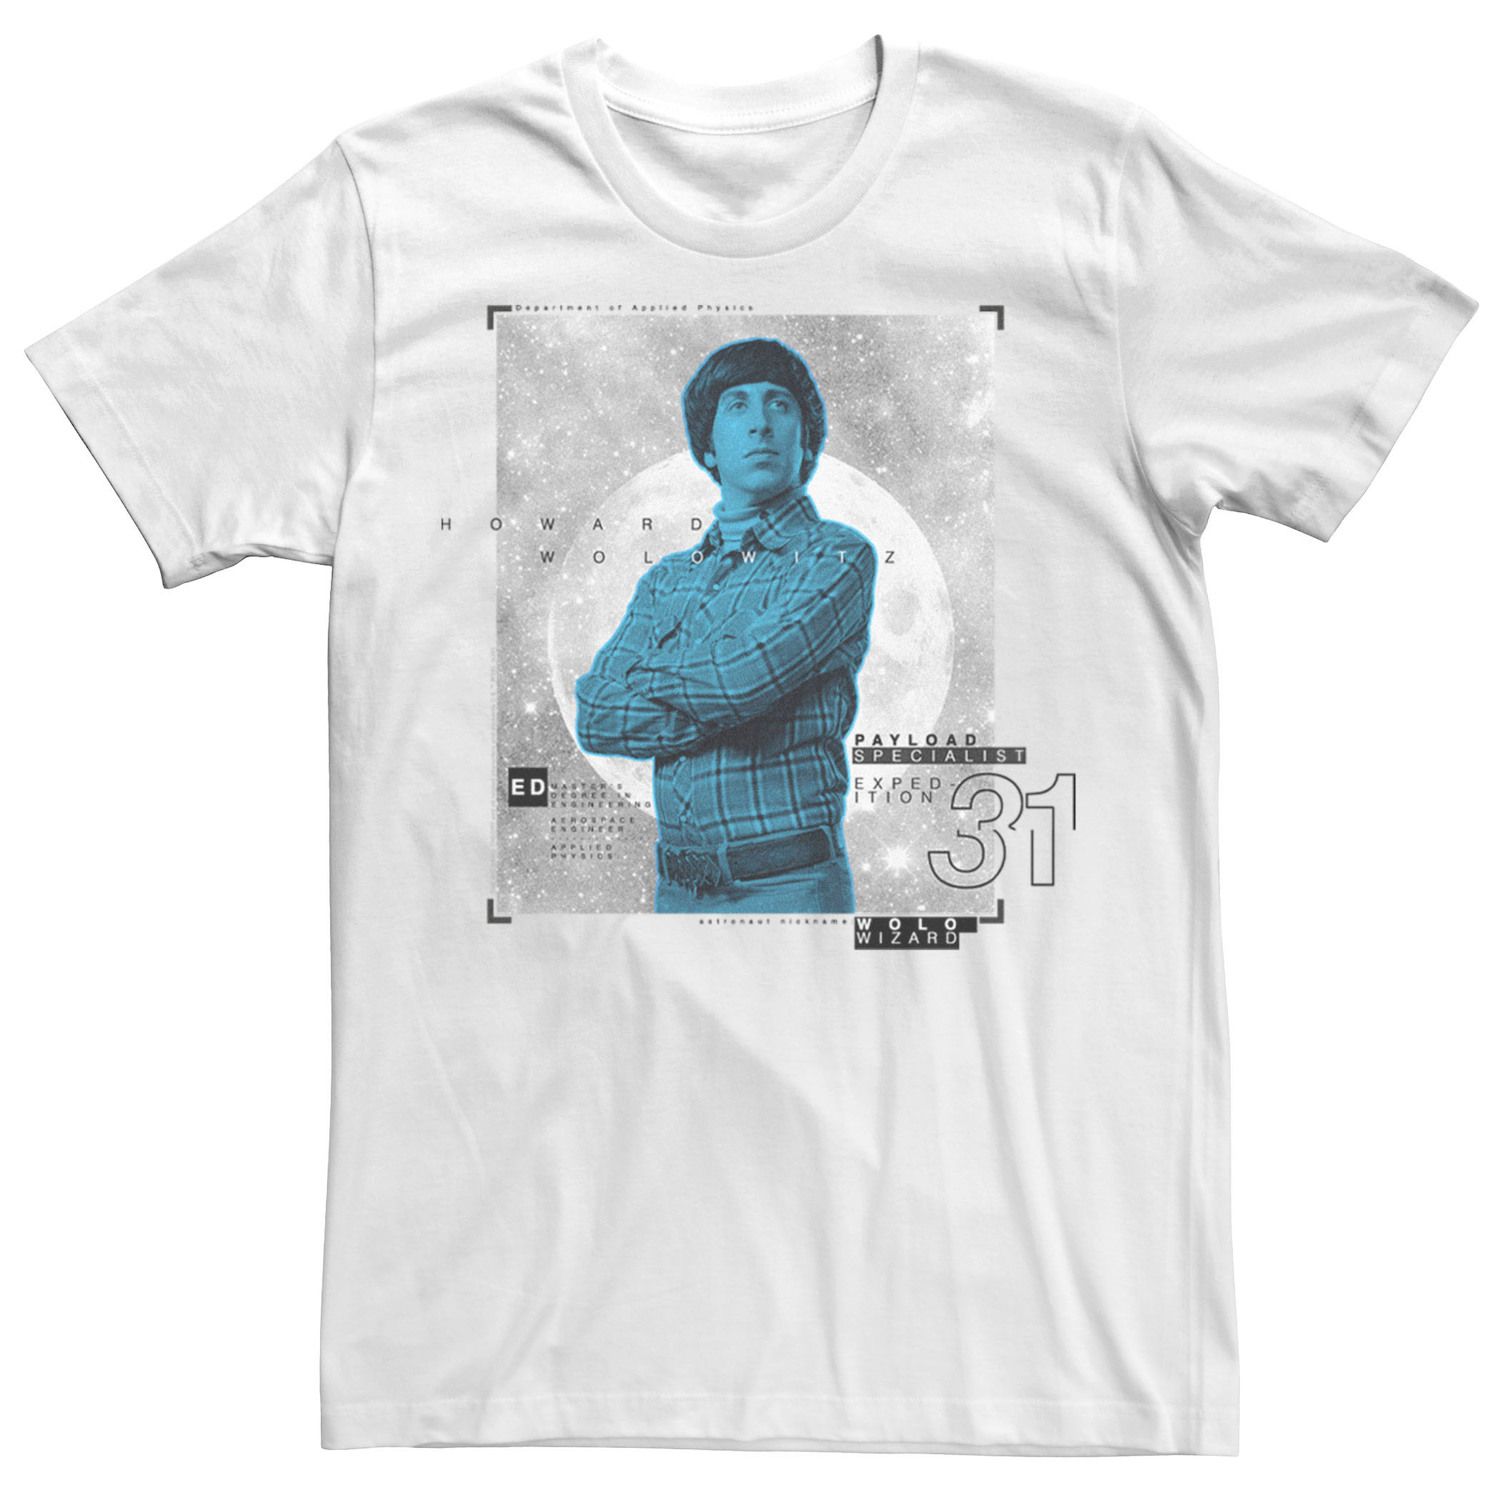 Мужская футболка с плакатом Говарда «Теория большого взрыва» Licensed Character мужская футболка с принтом теория большого взрыва блестящая футболка с коротким рукавом мужская брендовая черная футболка с графическим